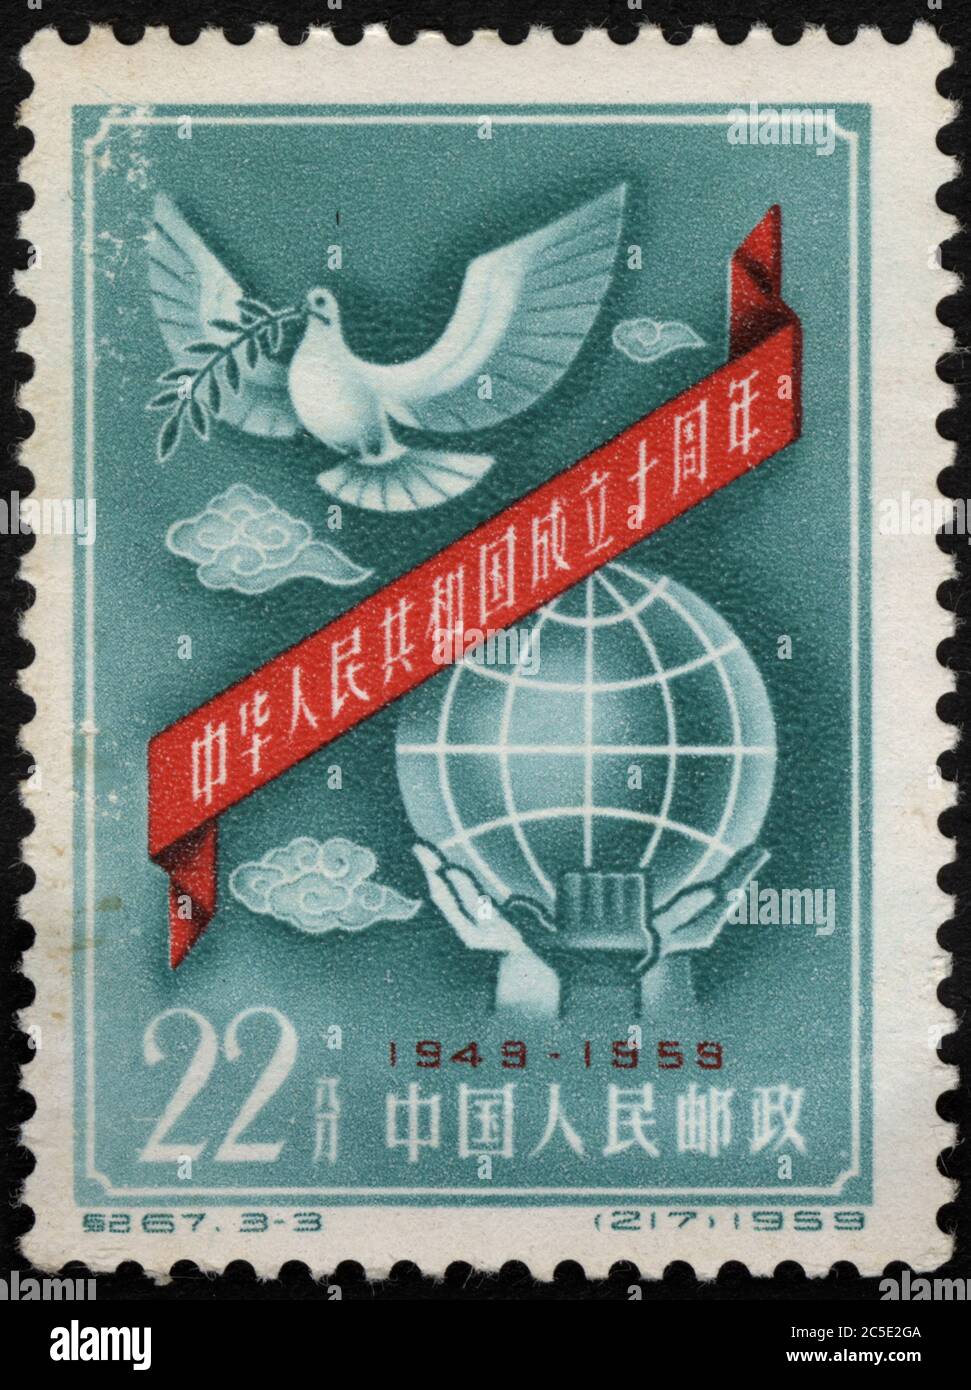 Fete du 10e anniversaire de la Republique Populaire de Chine, avec symbole de la colombe de la Paix et de la planete. Timbre, Poste de Chine, 1959. Stock Photo